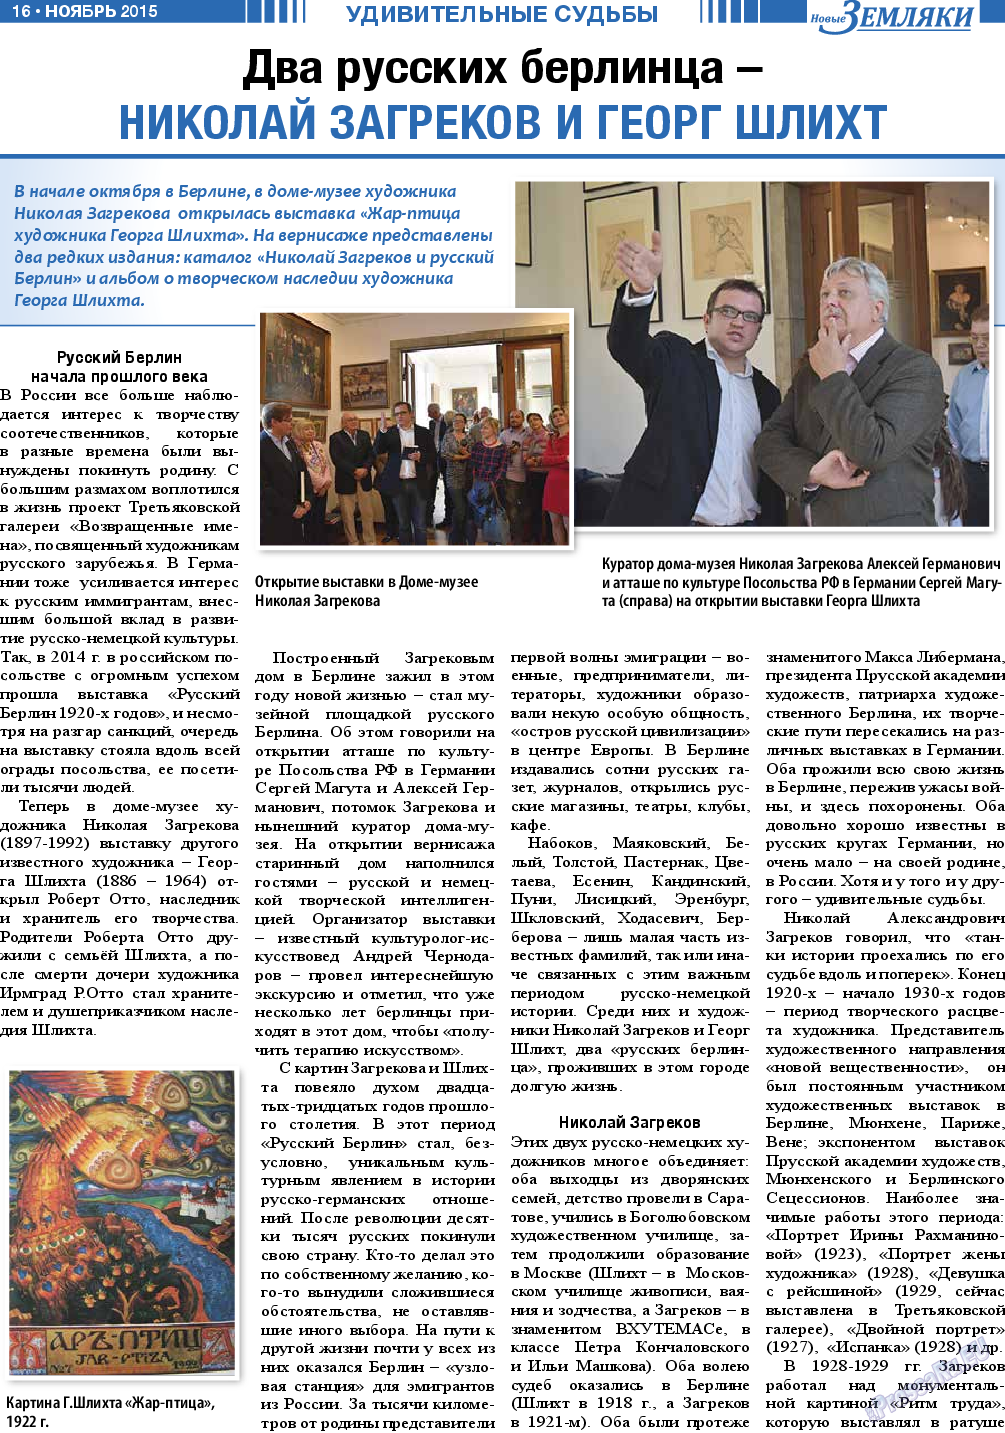 Новые Земляки (газета). 2015 год, номер 11, стр. 16